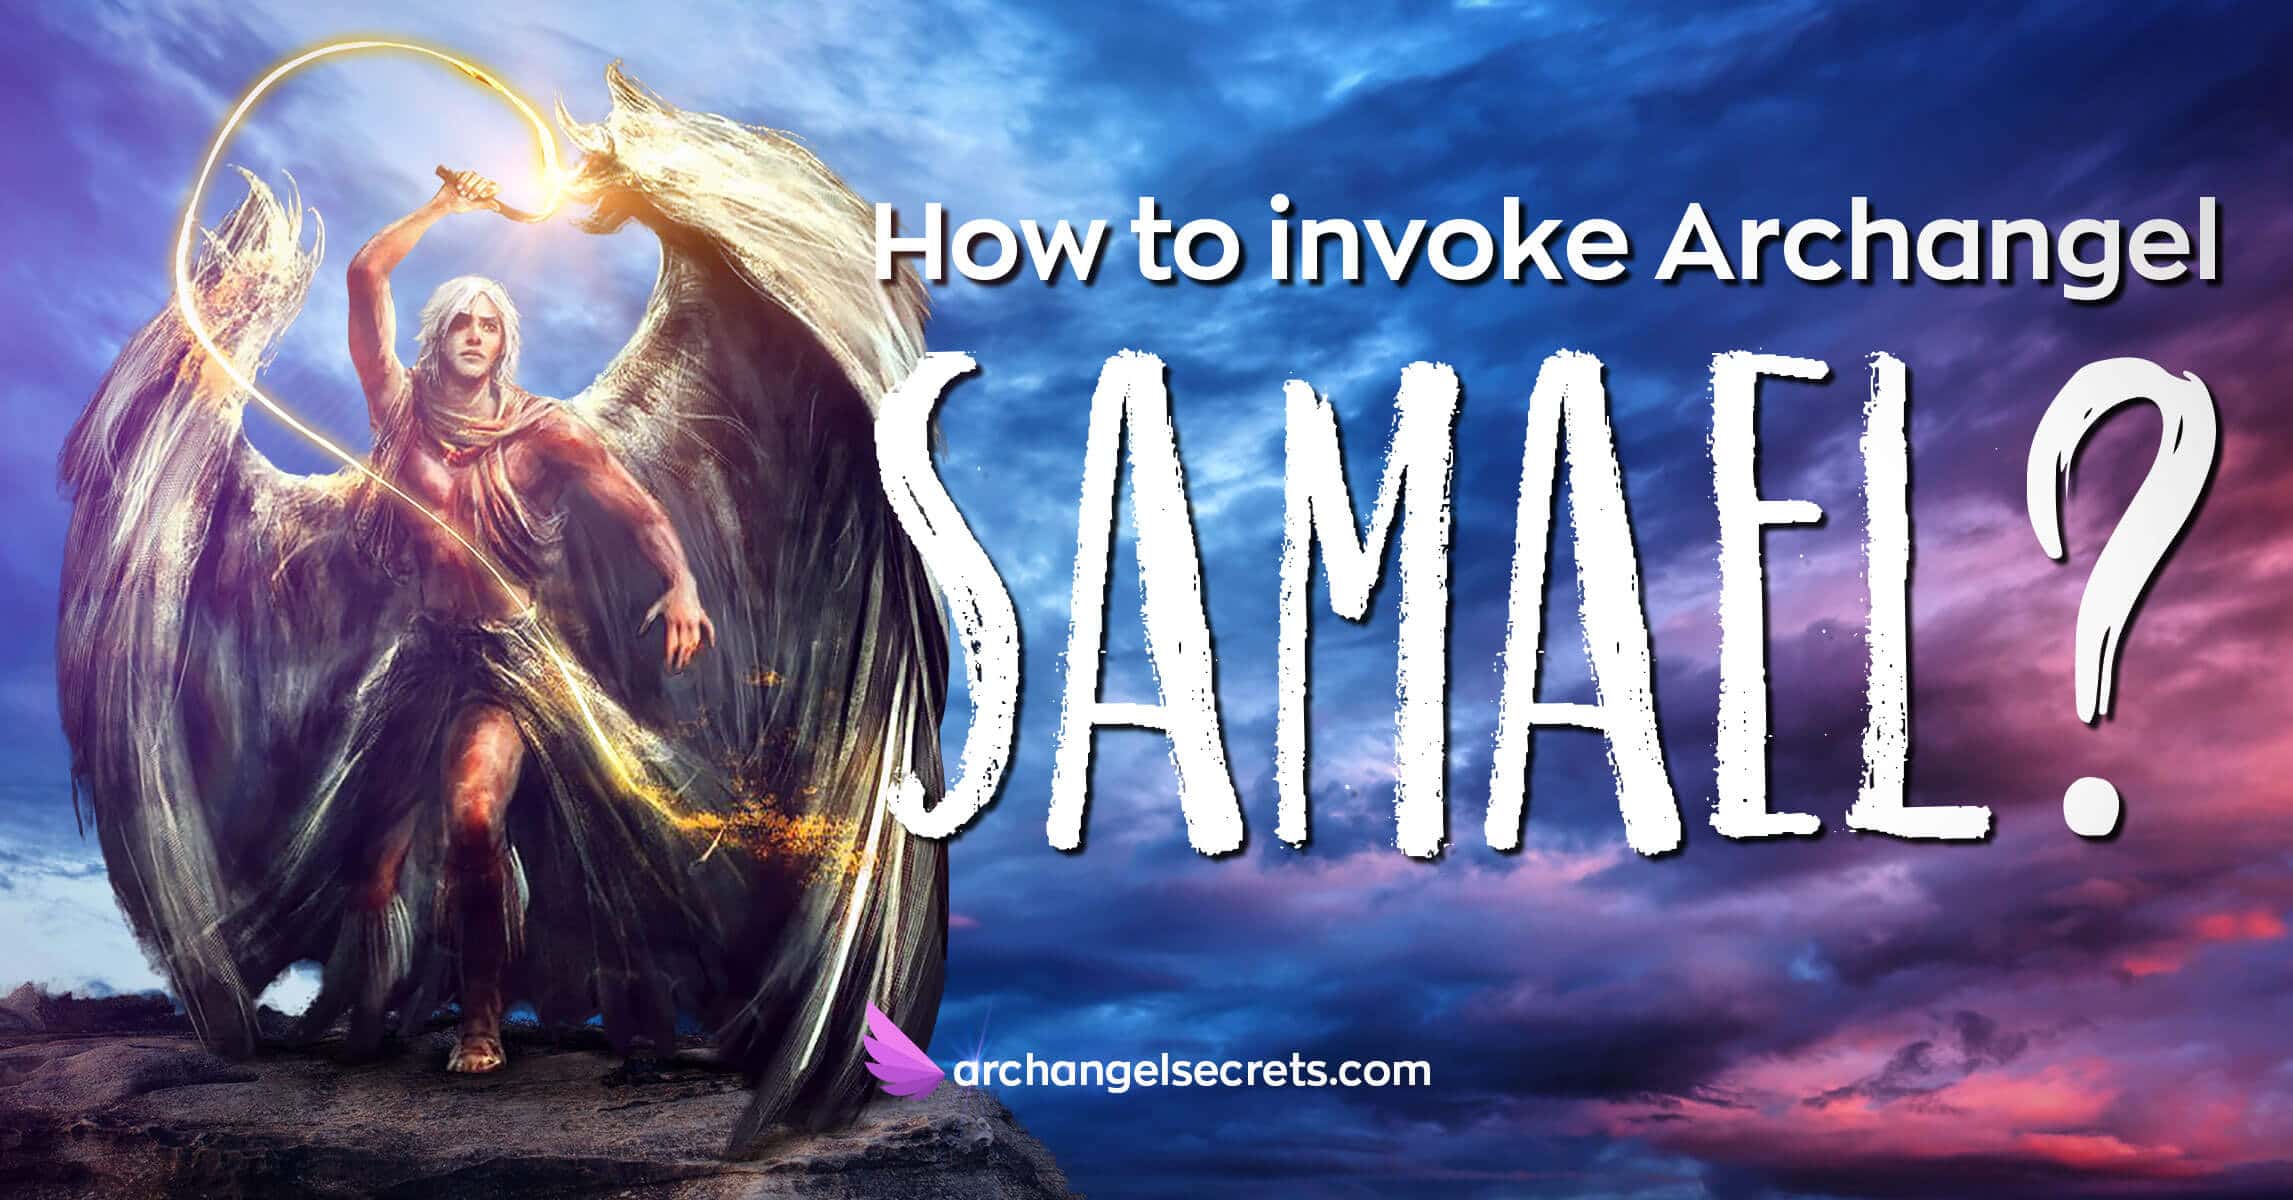 how-to-pray-to-archangel-samael-portrait